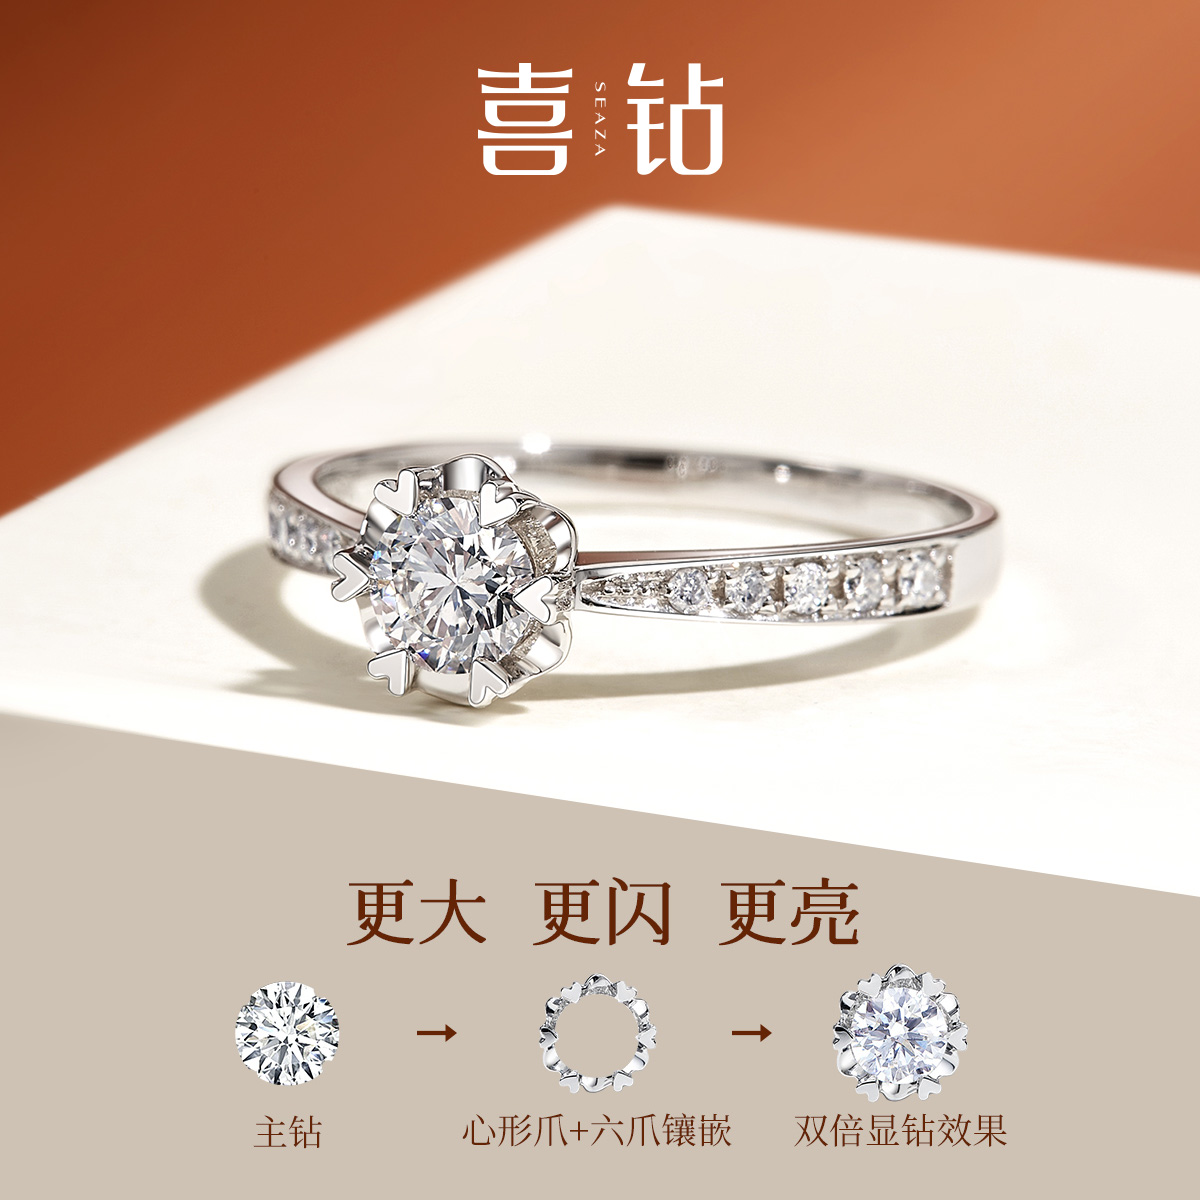 US DIAMOND 喜钻 雪花爱心结婚钻戒白18K金50分真钻钻石戒指女求婚订婚1克拉 160